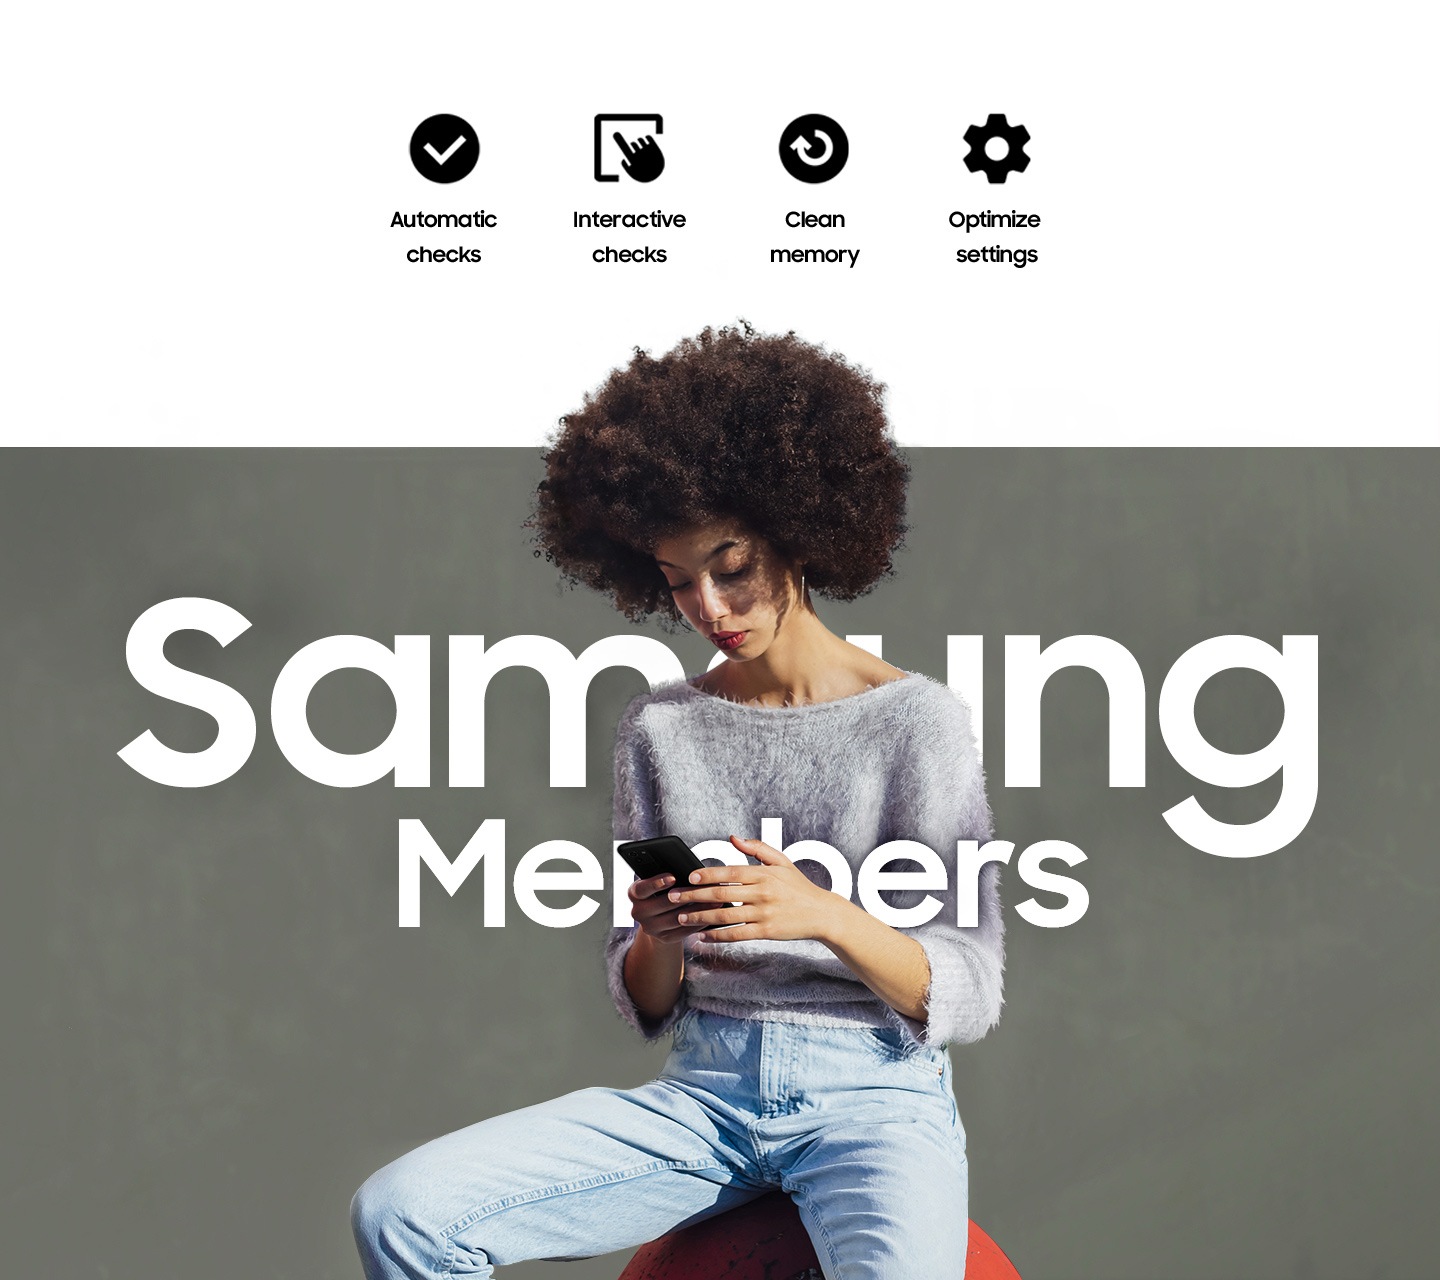 Một người phụ nữ ngồi bên ngoài và sử dụng điện thoại. Dòng chữ Samsung Members được đặt ngang quá người cô gái. Các dòng chữ Automatic checks, Interactive checks, Clean memory và Optimize settings.